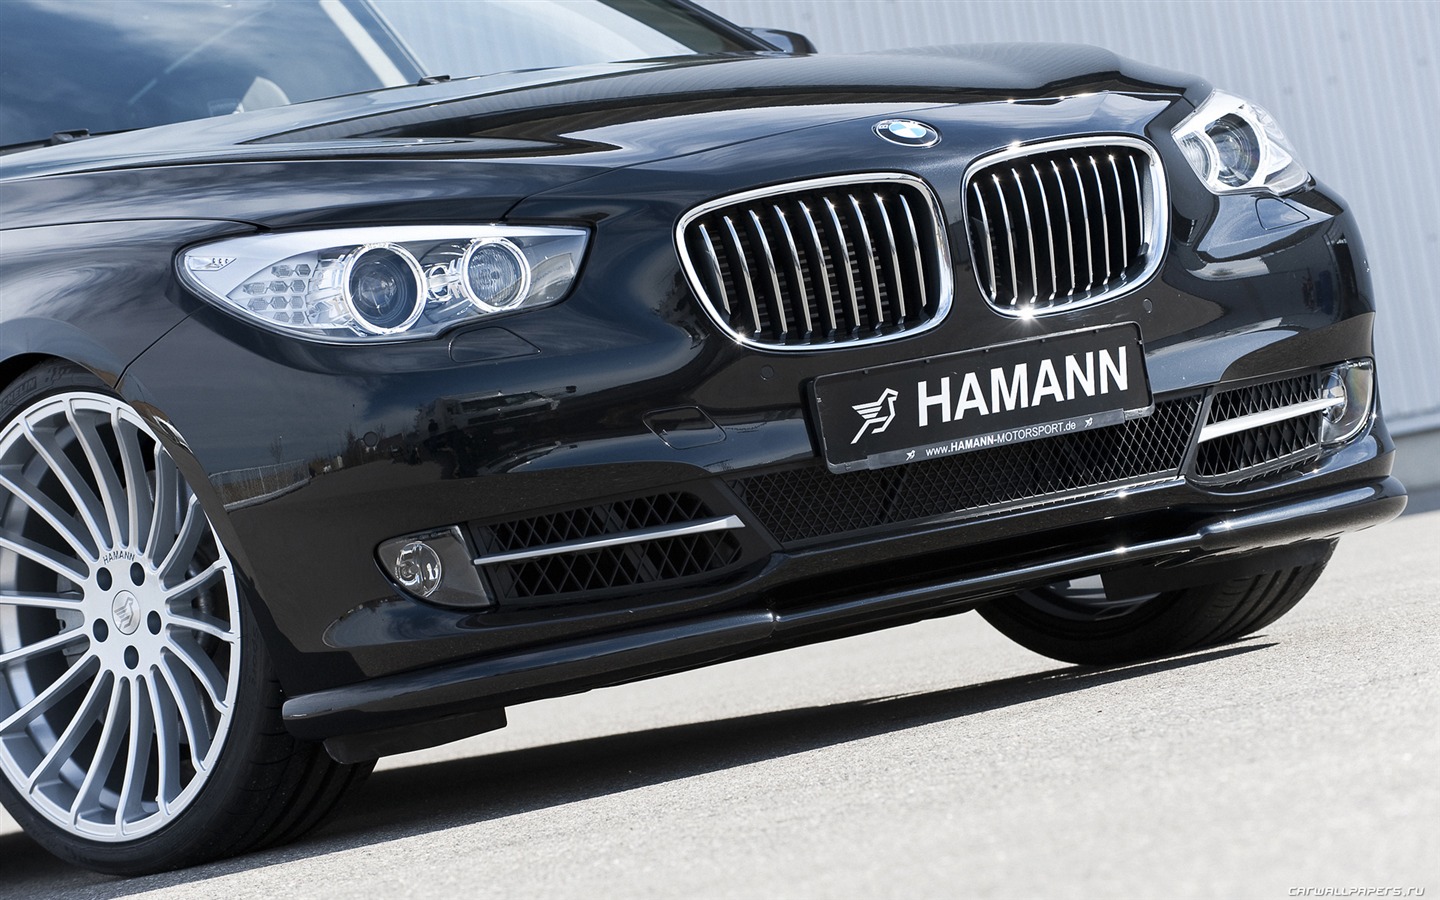 Hamann BMW 5-Series Gran Turismo - 2010 寶馬 #20 - 1440x900